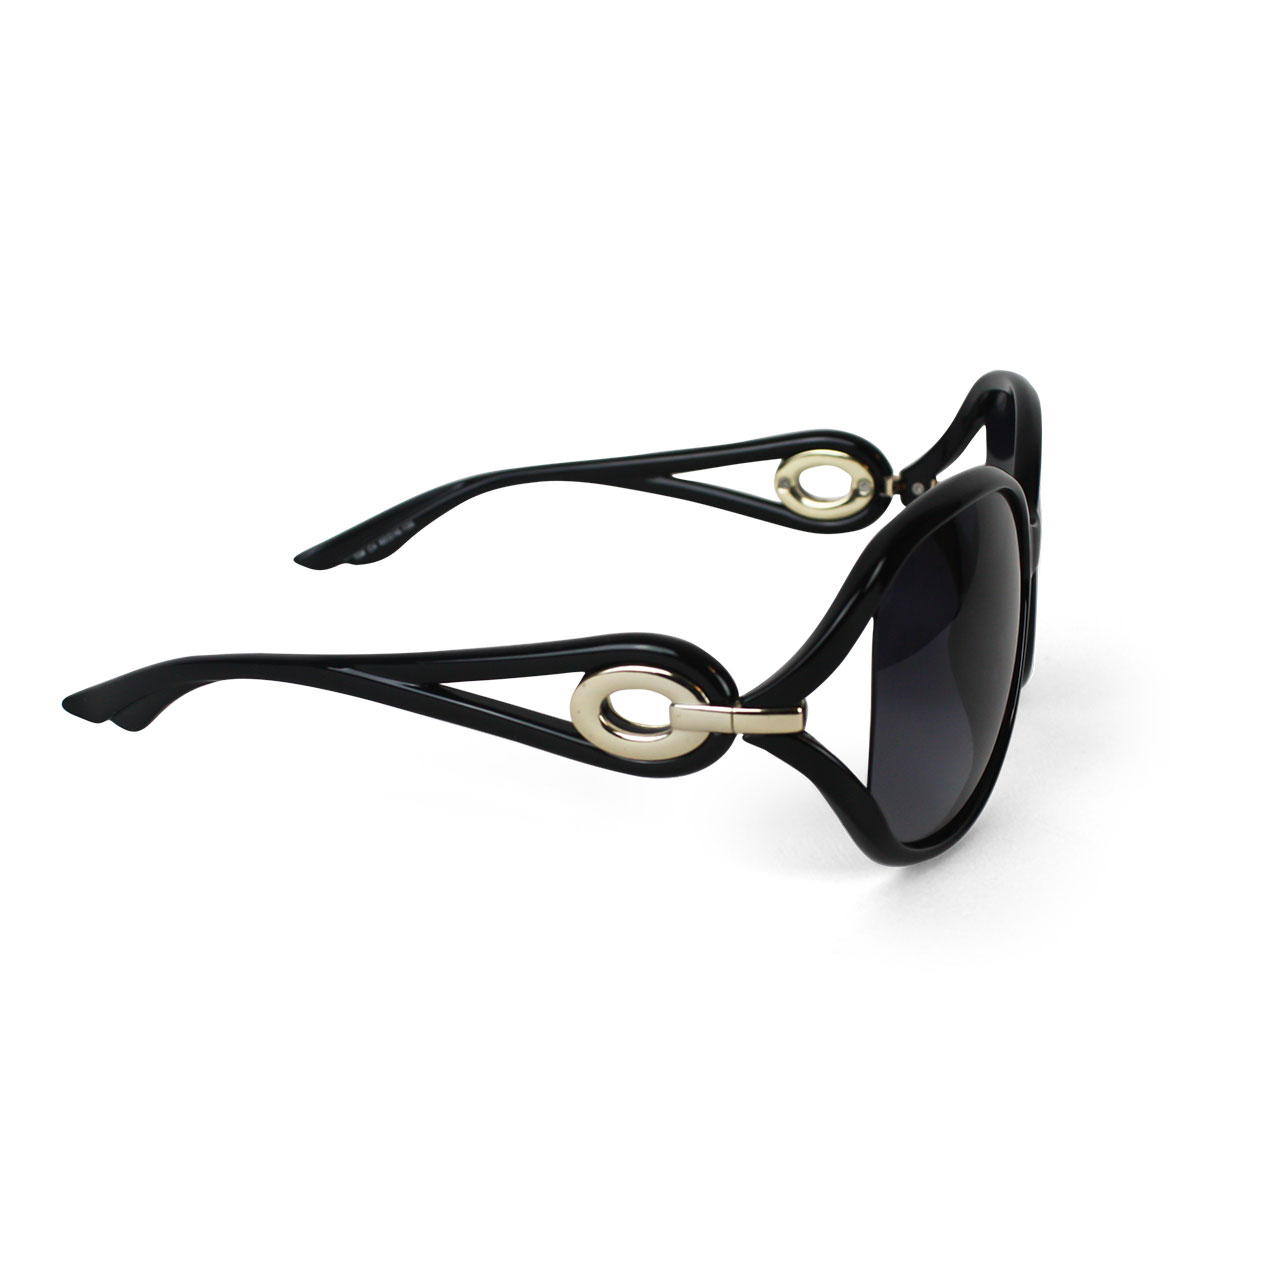 Women Polarized Black Cat-Eye Designer Sunglasses